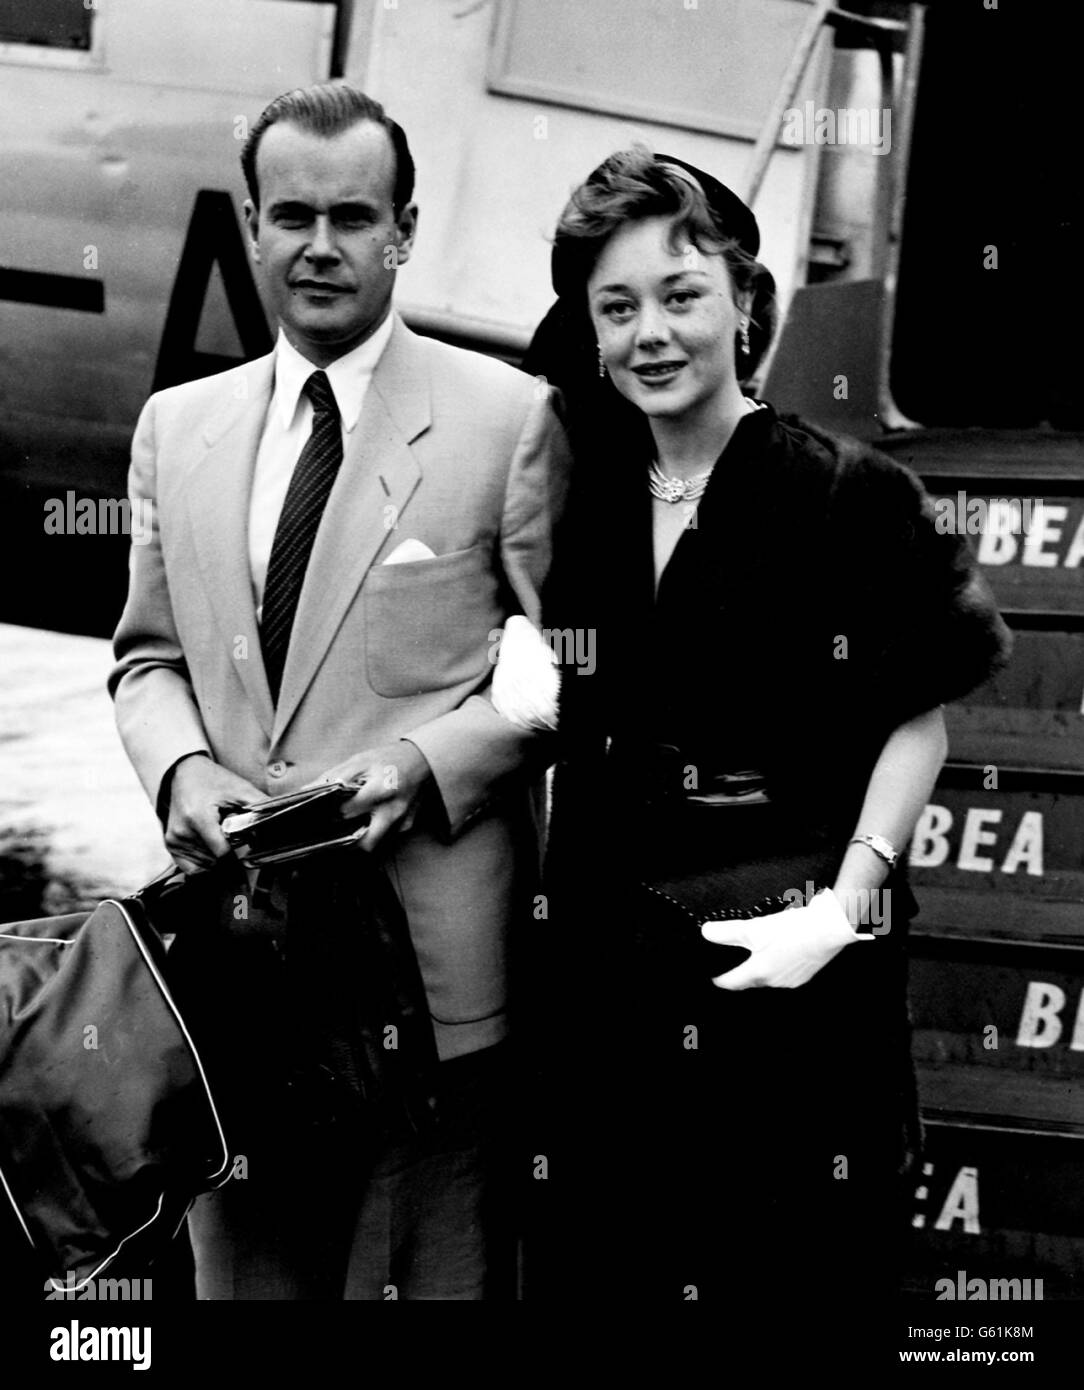 Zurück von den verspäteten Flitterwochen einer Woche ist die britische Schauspielerin Glynis Johns, die mit ihrem amerikanischen Ehemann, Herrn David Foster, bei ihrer Ankunft am Flughafen Northolt fotografiert wurde. Stockfoto